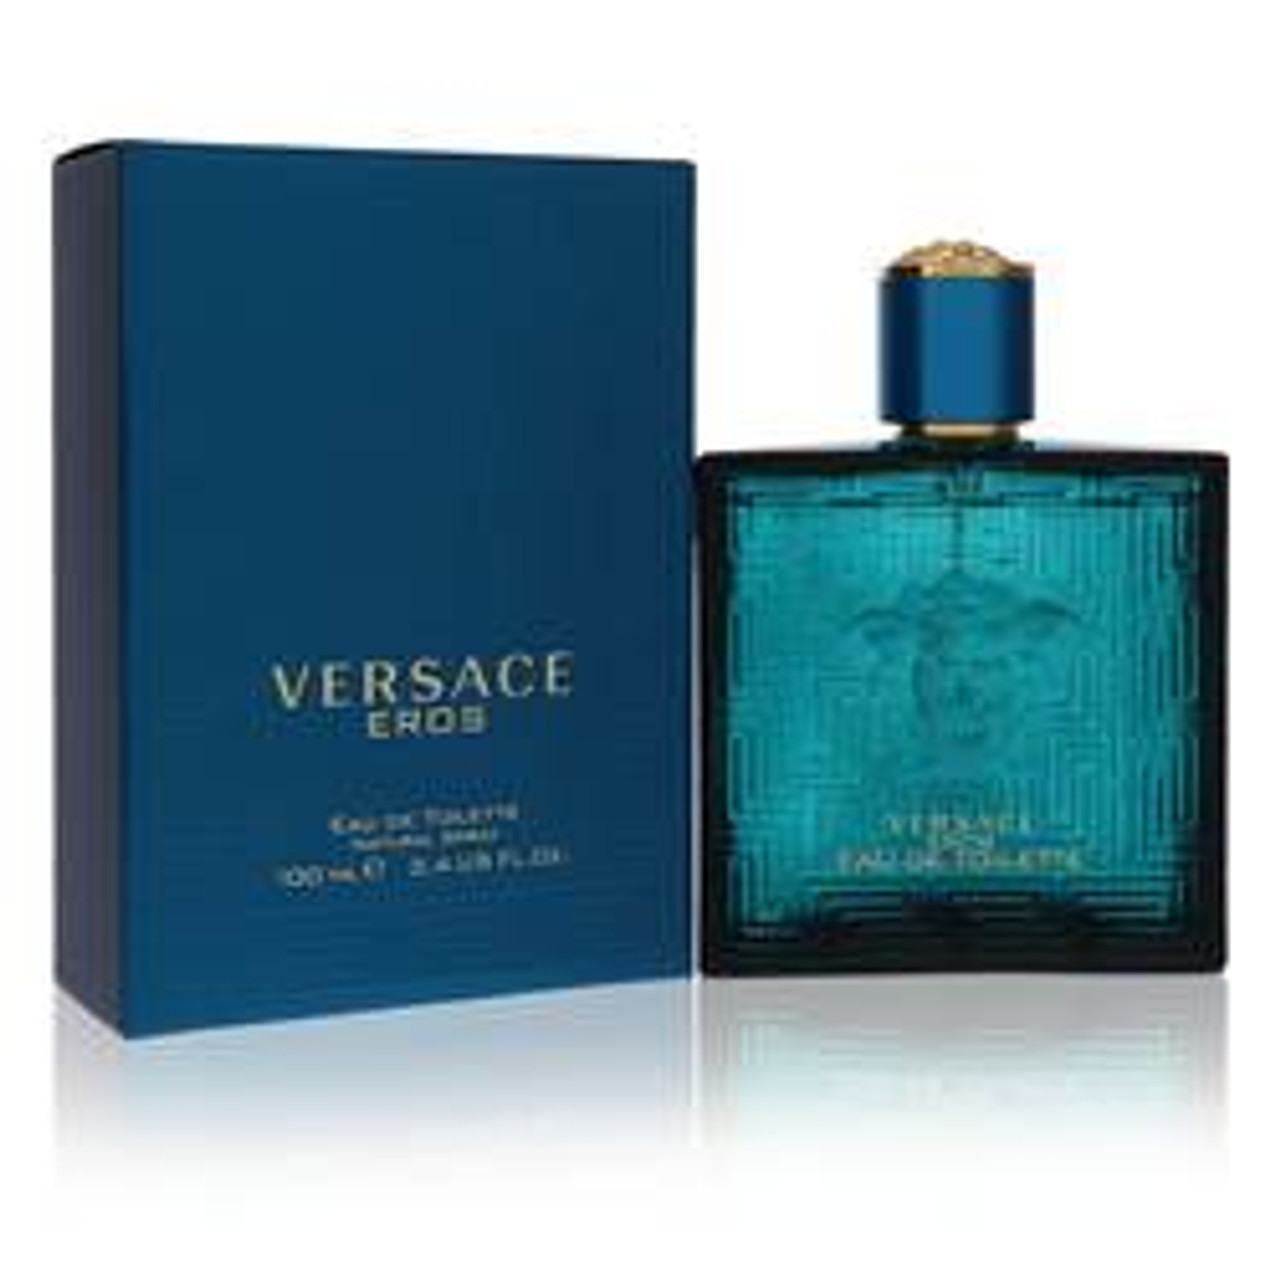 Versace Eros Cologne By Versace Eau De Toilette Spray 3.4 oz for Men - *Pre-Order